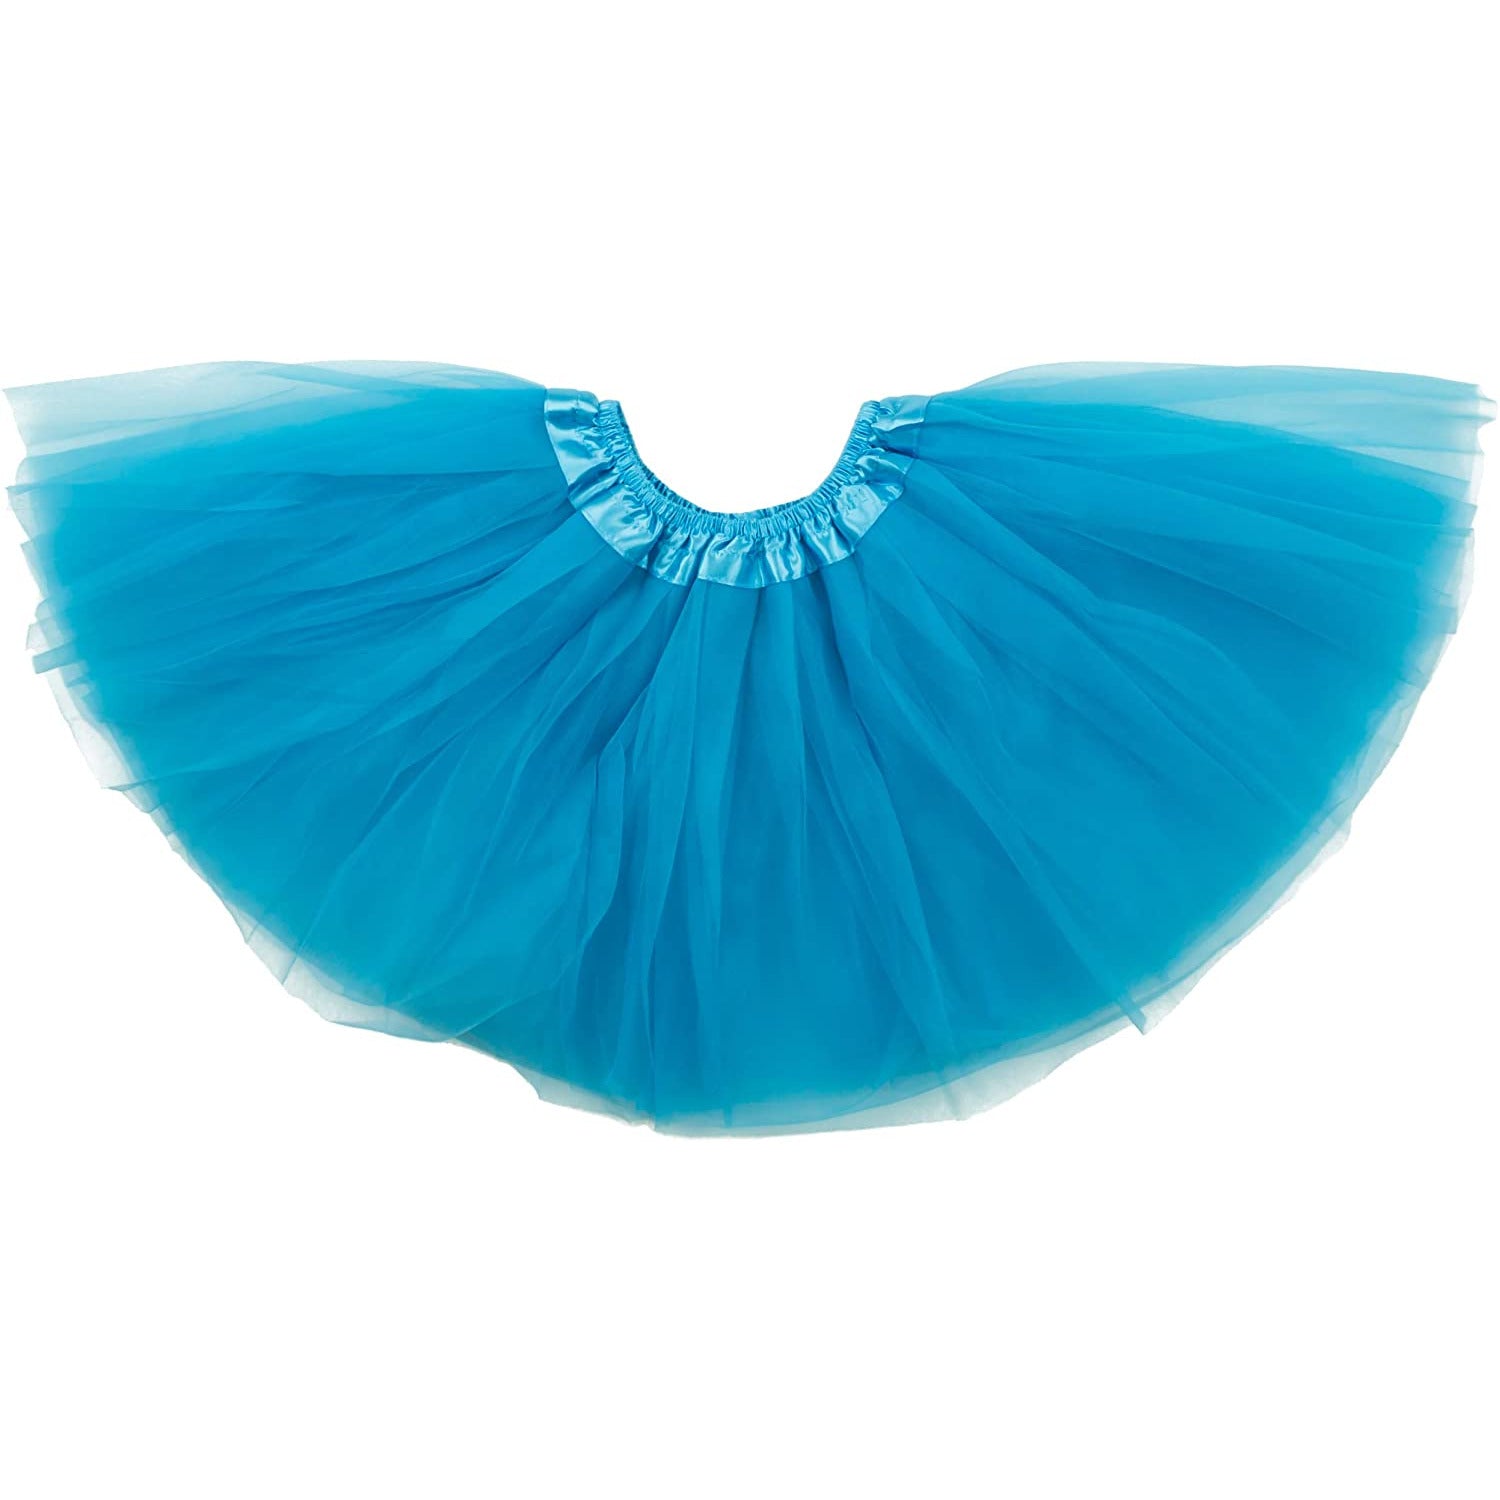 Dancina Tulle Skirt for Girls 2-12 years in Sky BlueDancina Tulle Skirt for Girls 2-12 years in Turquoise